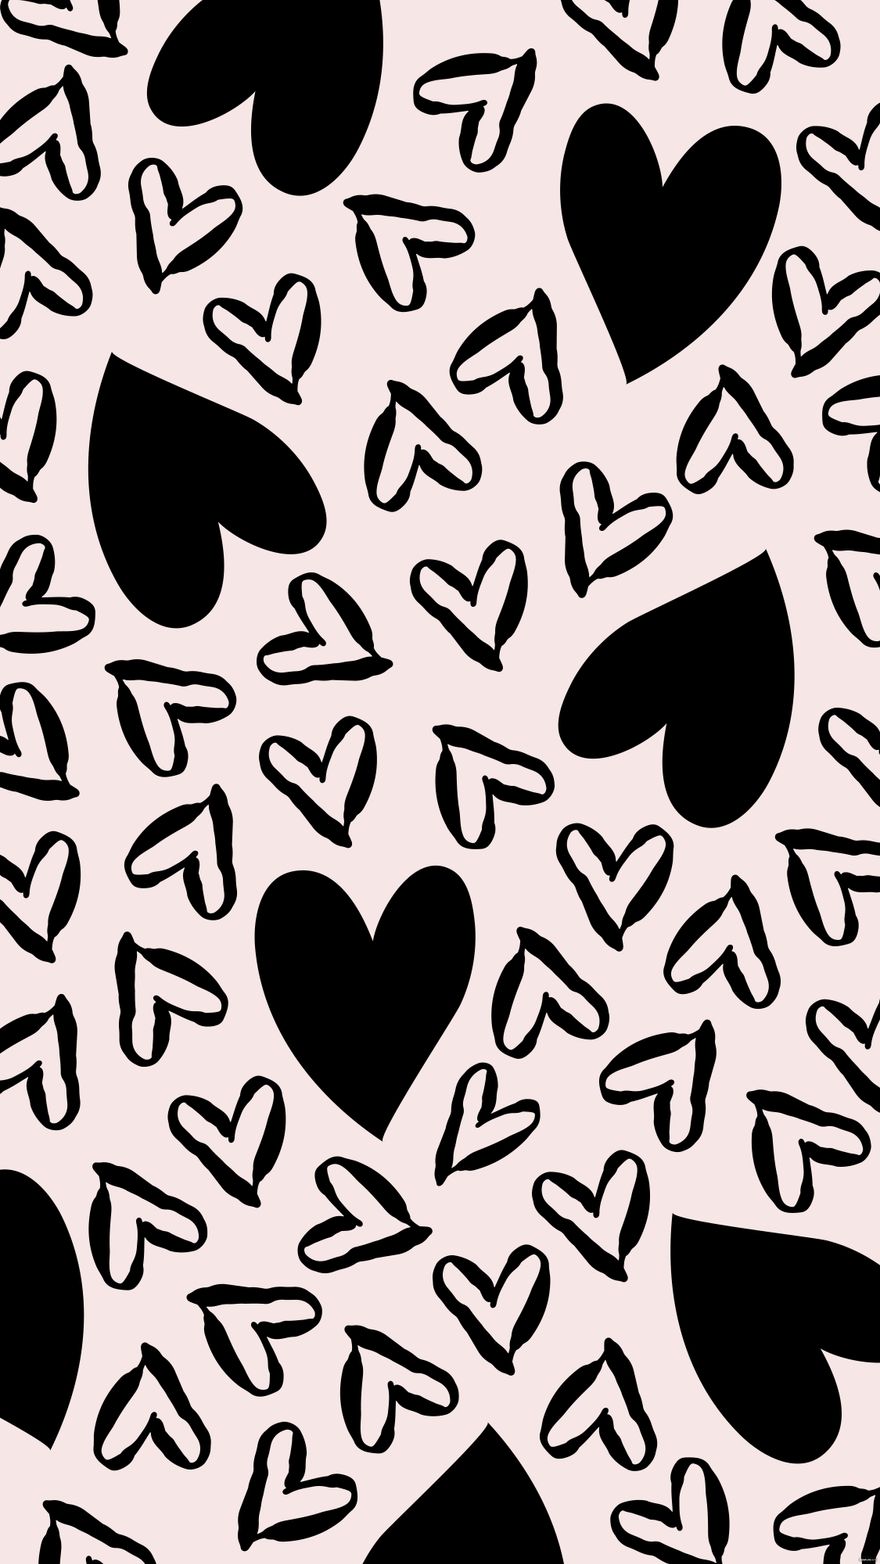 Free Black Heart Background - EPS, Illustrator, JPG, SVG ...